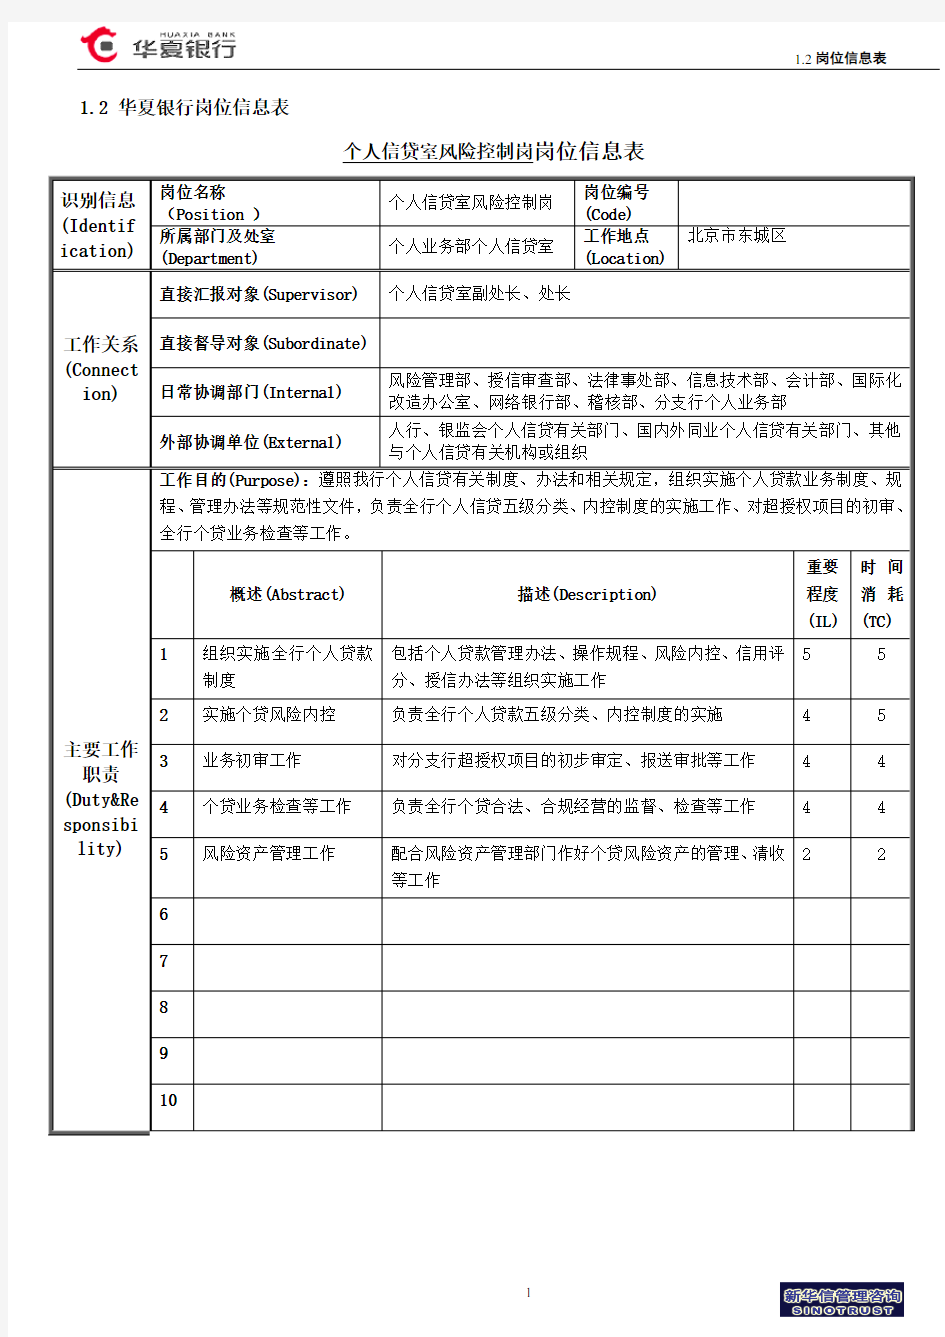 1.2华夏银行岗位信息表(风险控制岗)